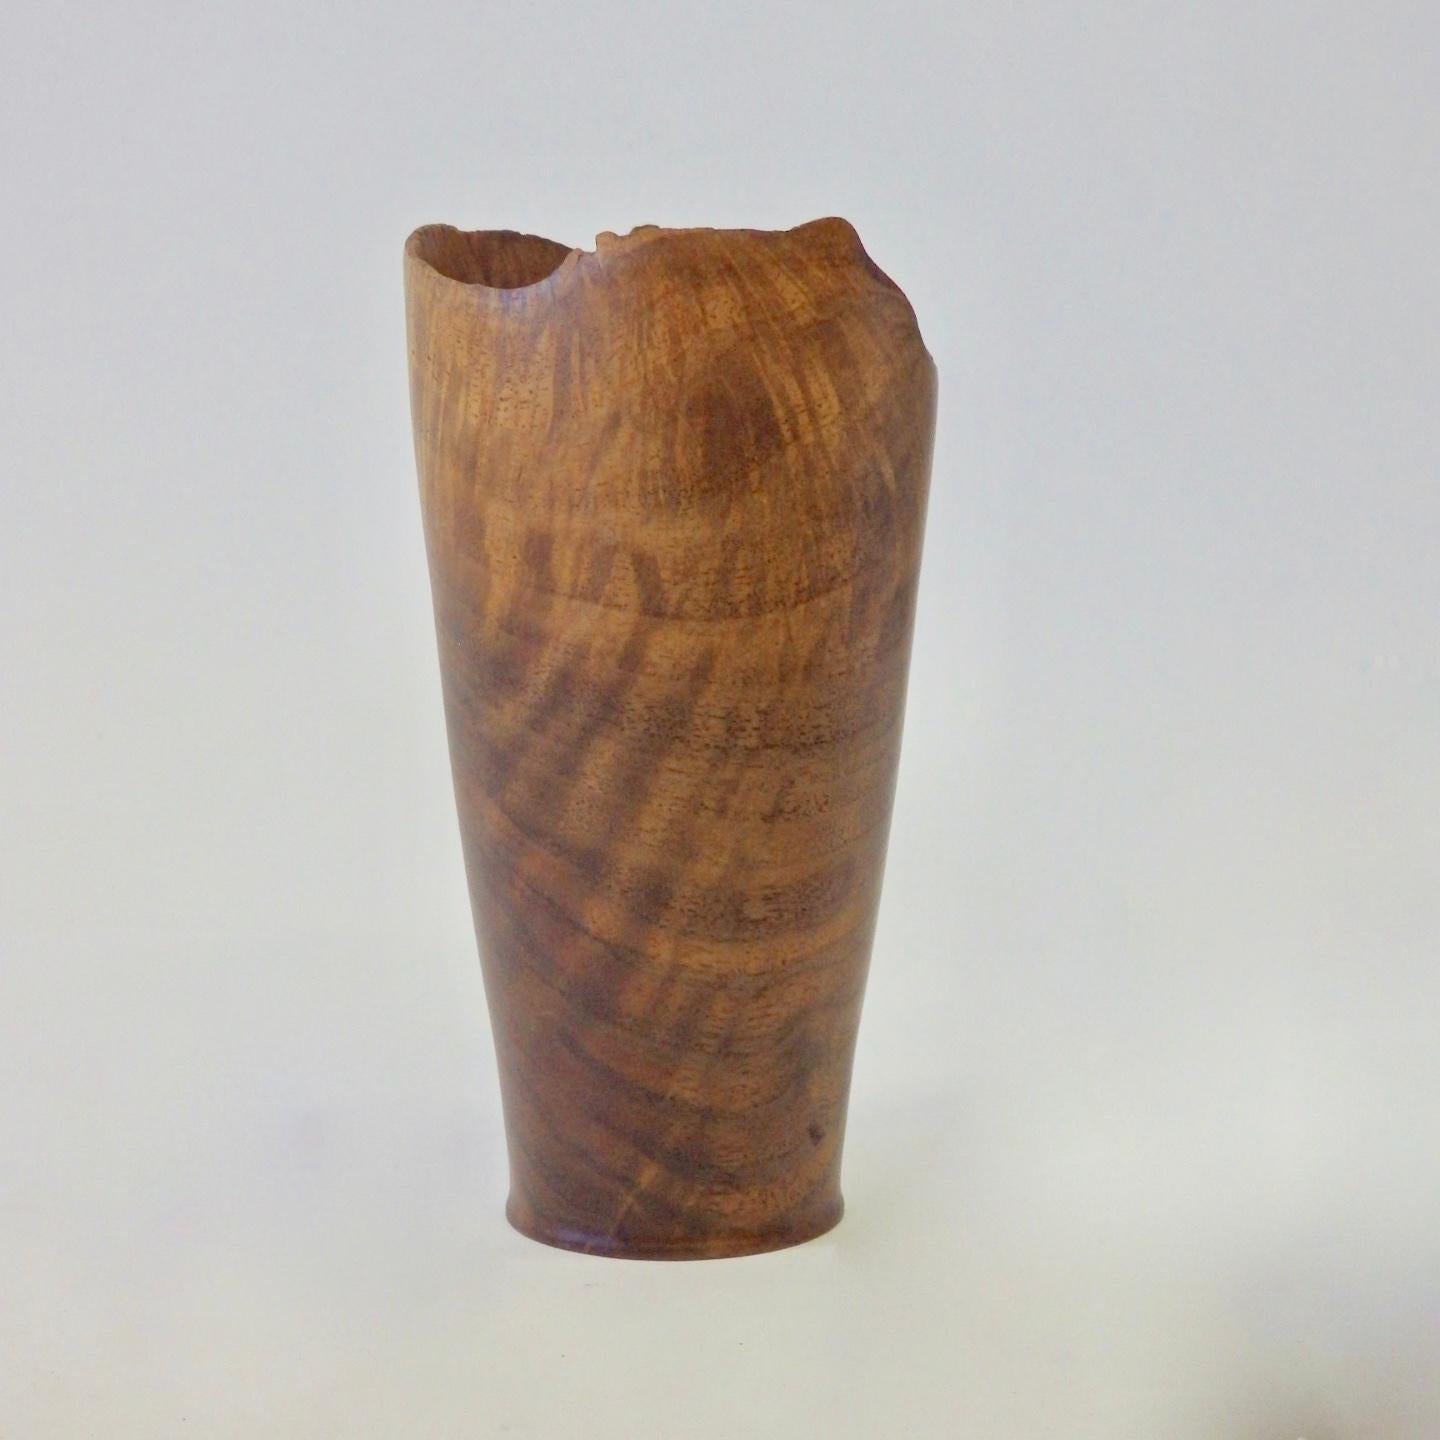 Unique Handmade Wood turned Carved Live Natural edge Wooden Vase Bowl